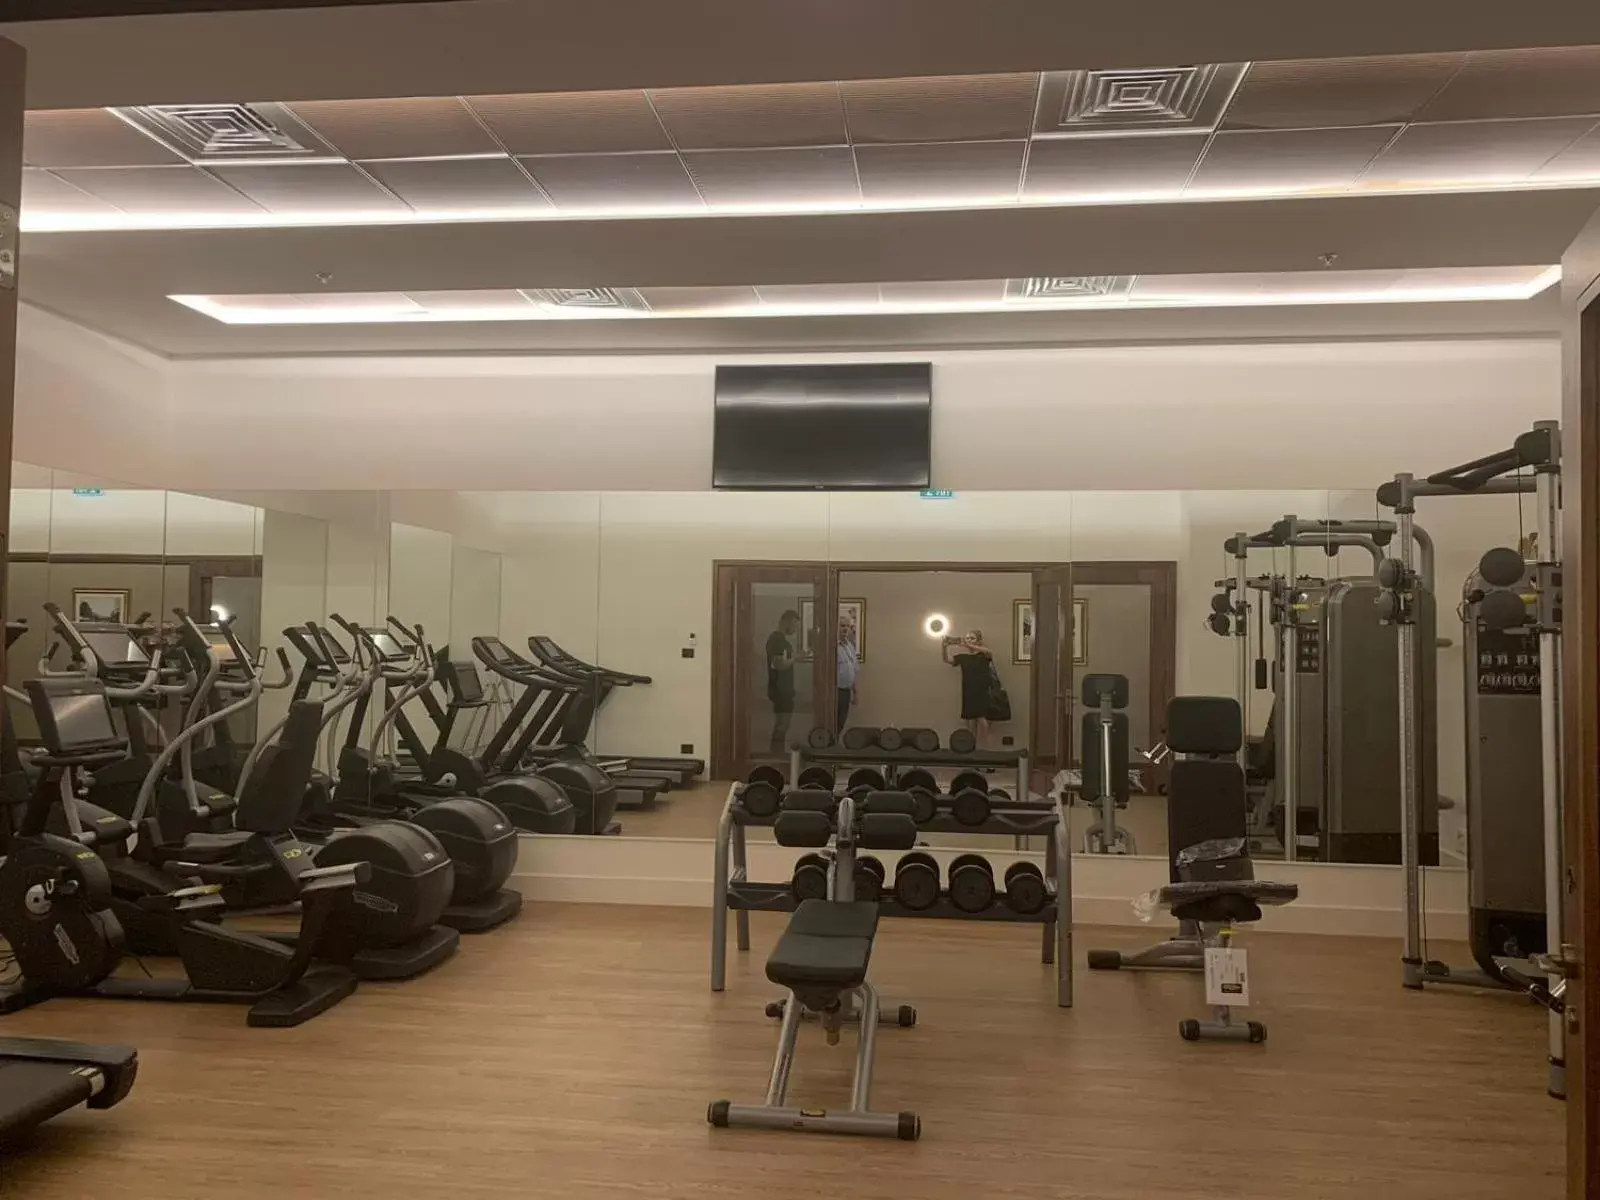 Fitness centre/facilities, Fitness Center/Facilities in Herbert Samuel Opera Tel Aviv